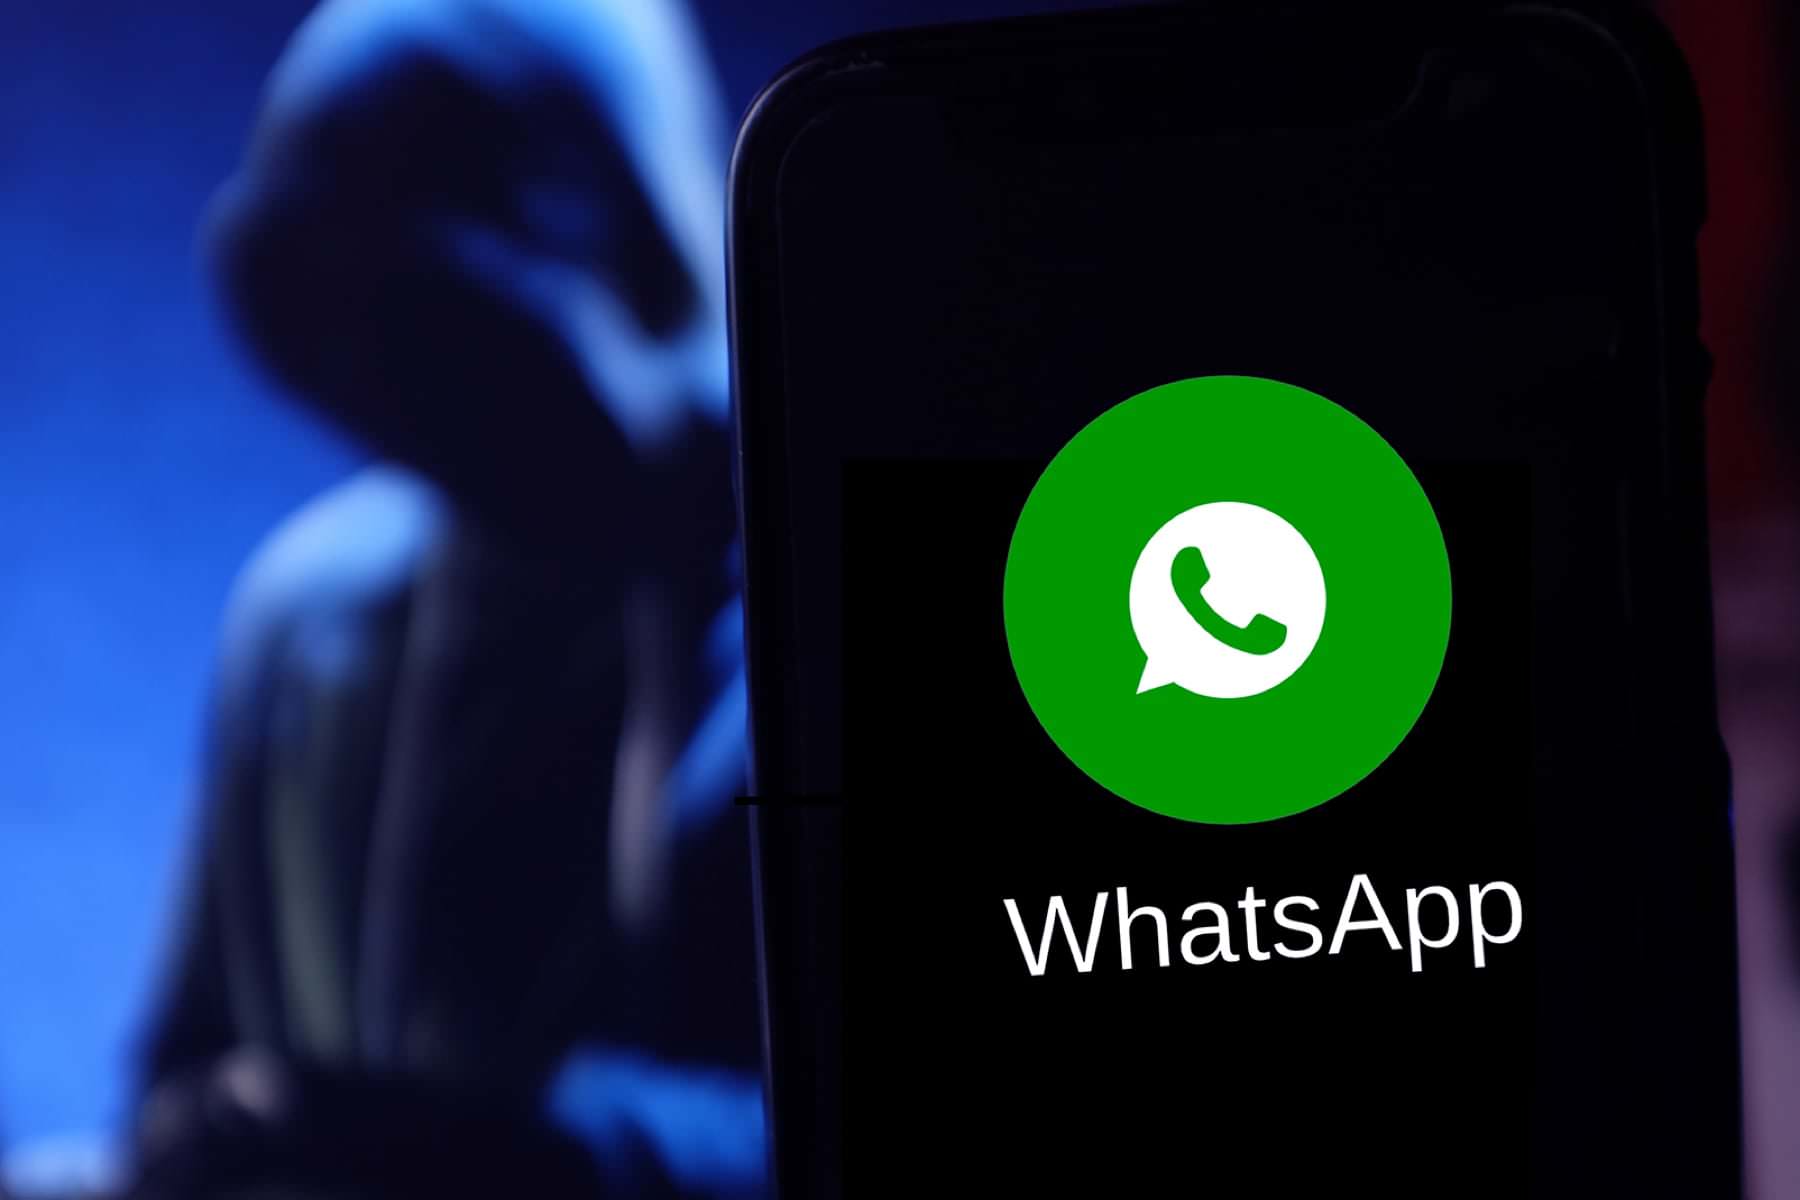 65061 WhatsApp захлестнула волна опаснейшего мошенничества. Люди теряют миллионы рублей